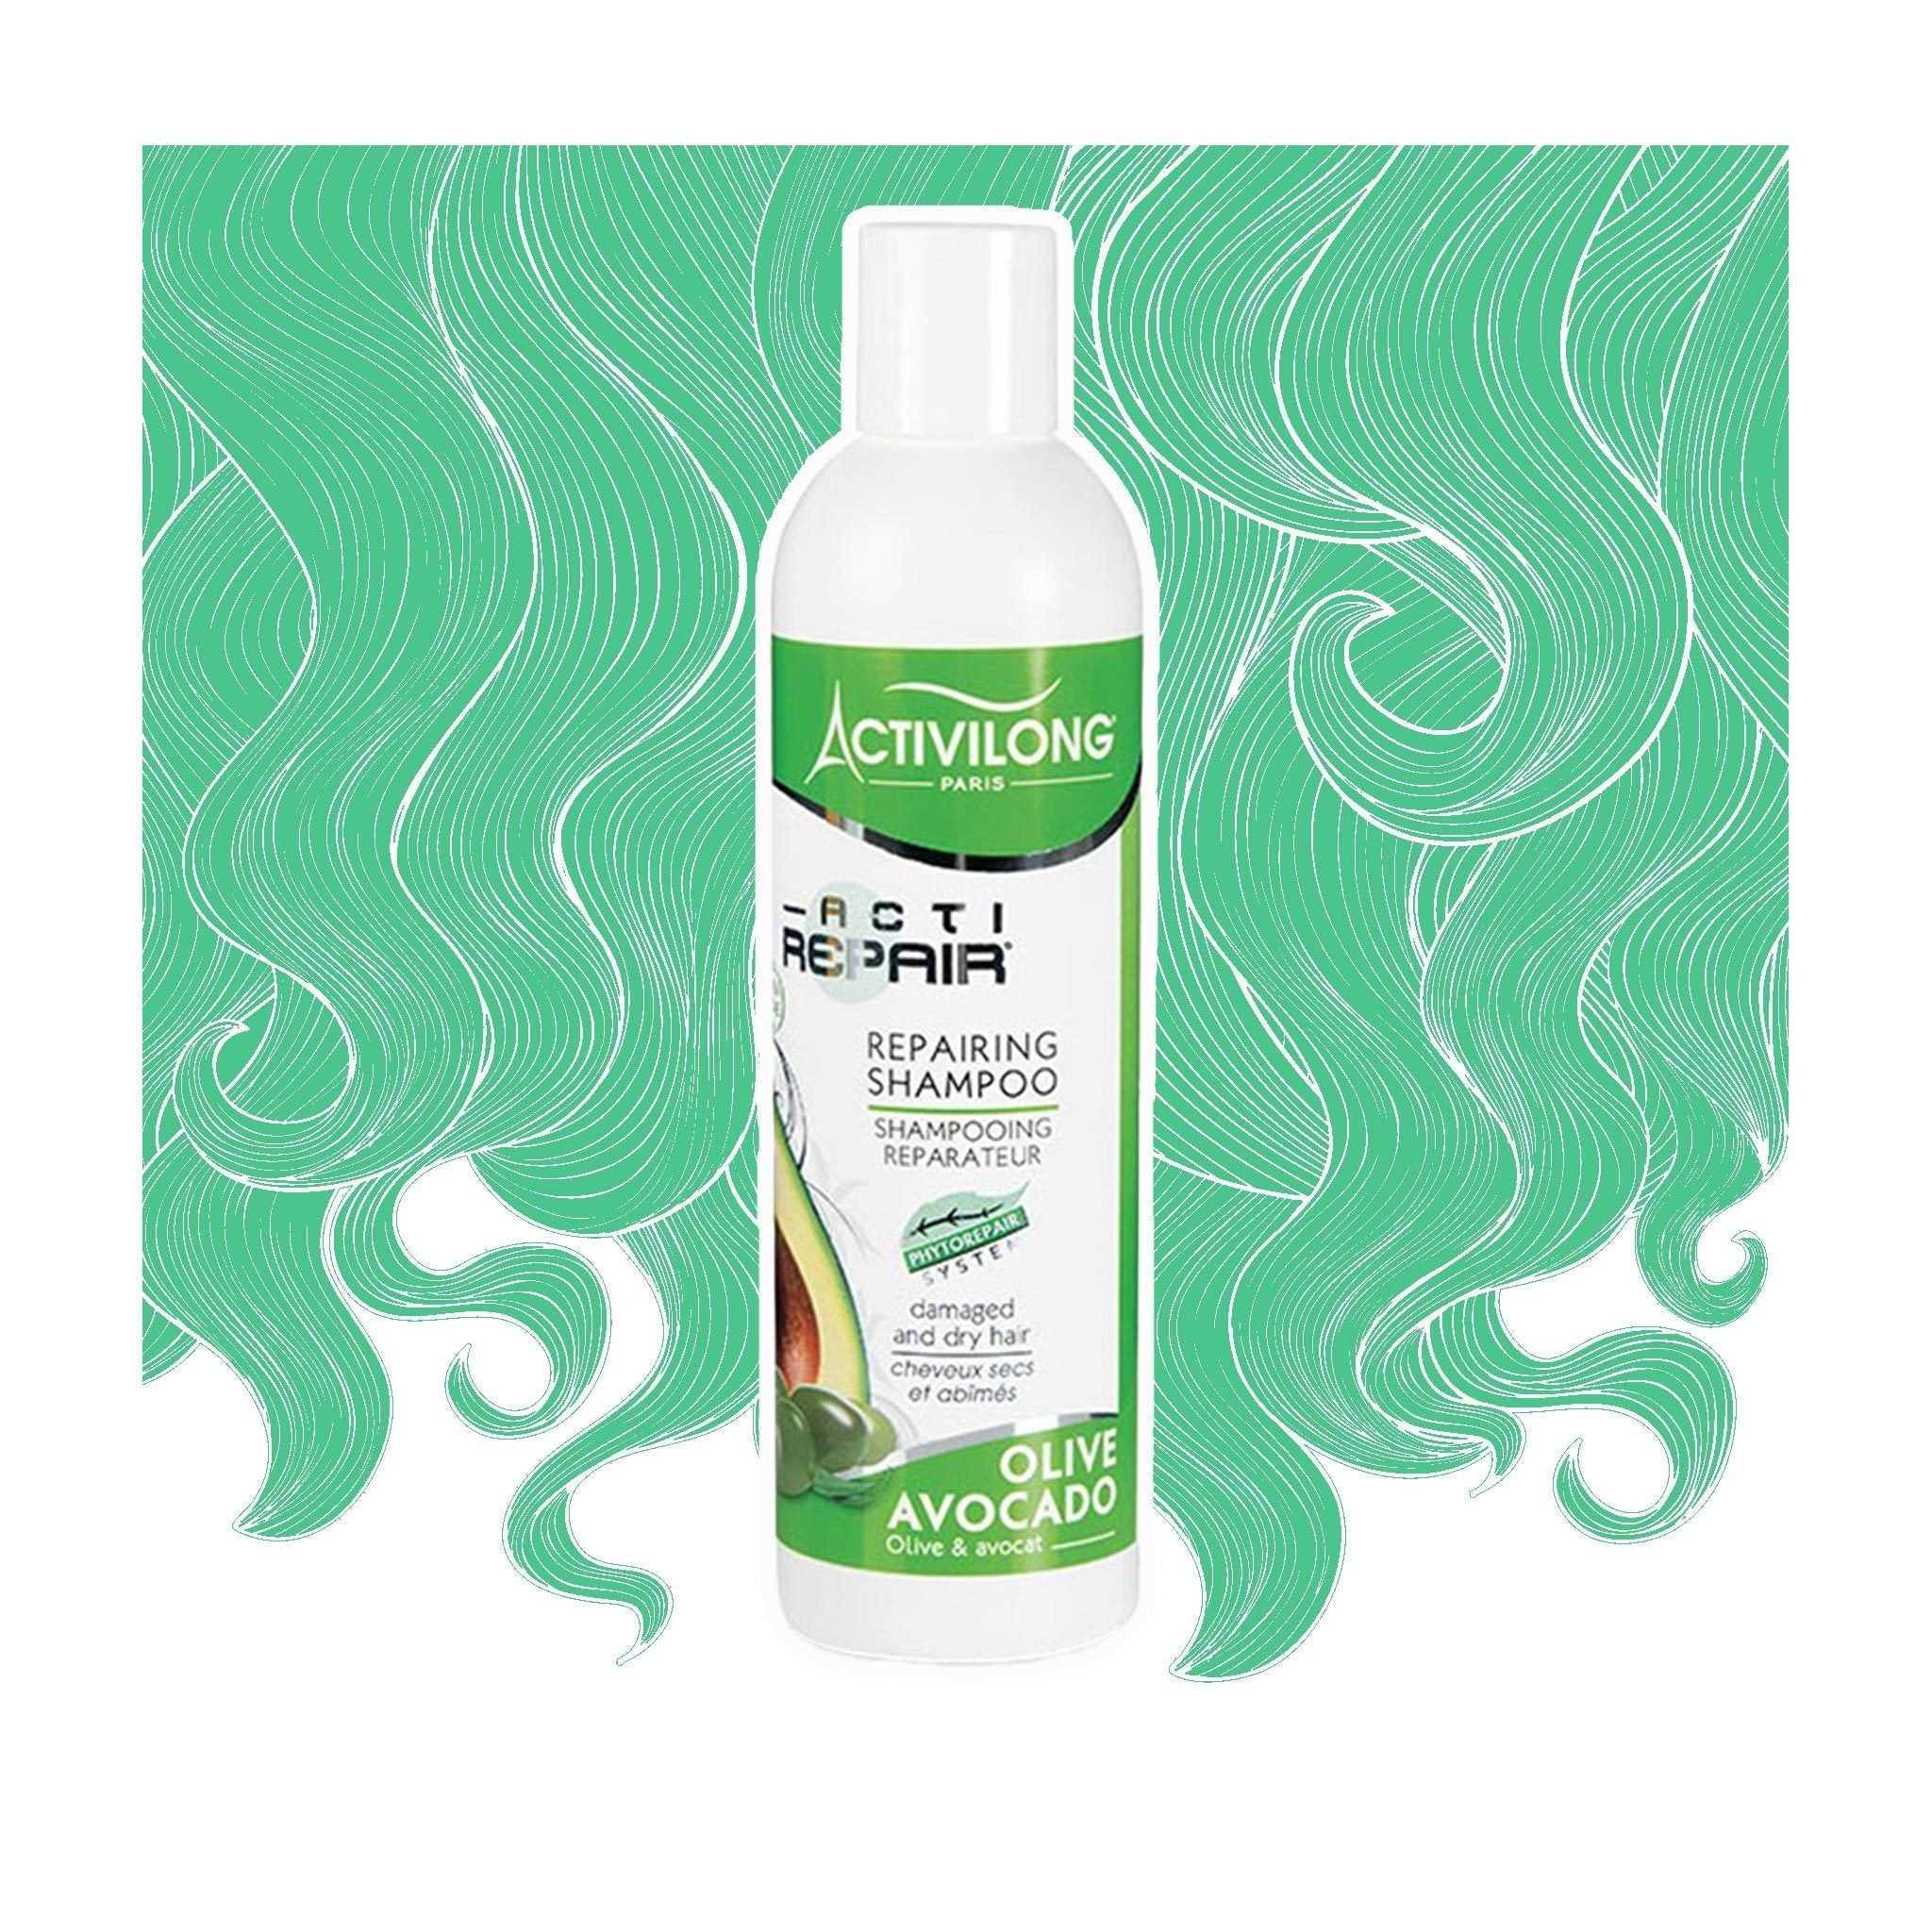 Activilong | Shampoo riparatore ACTIREPAIR - lockenkopf